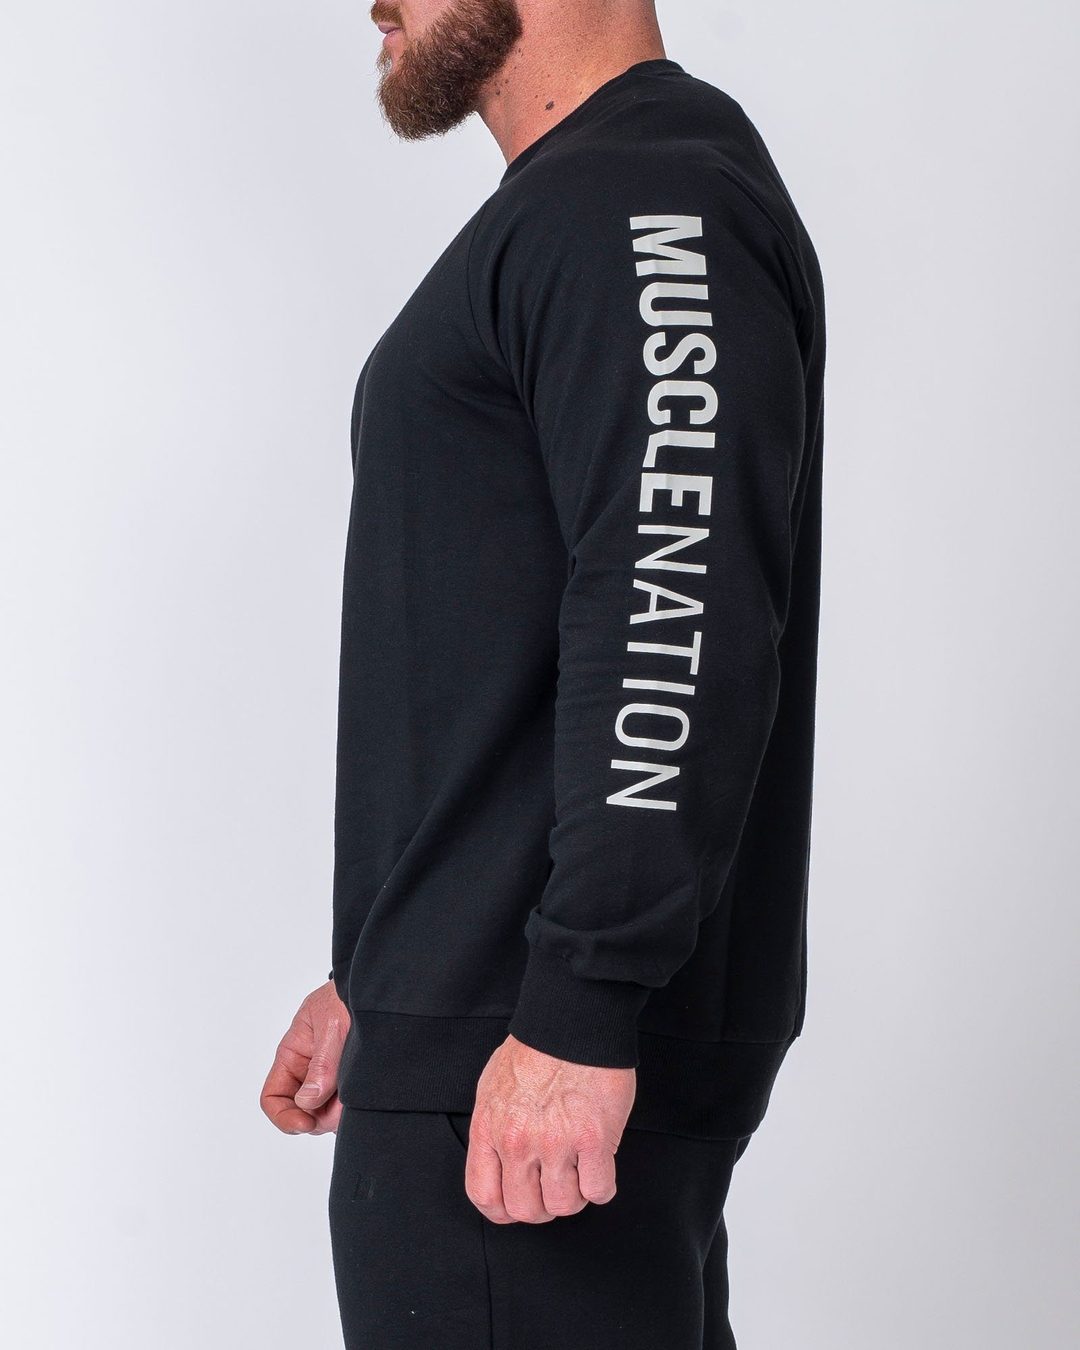 musclenation Mens Lightweight Long Sleeve - Black